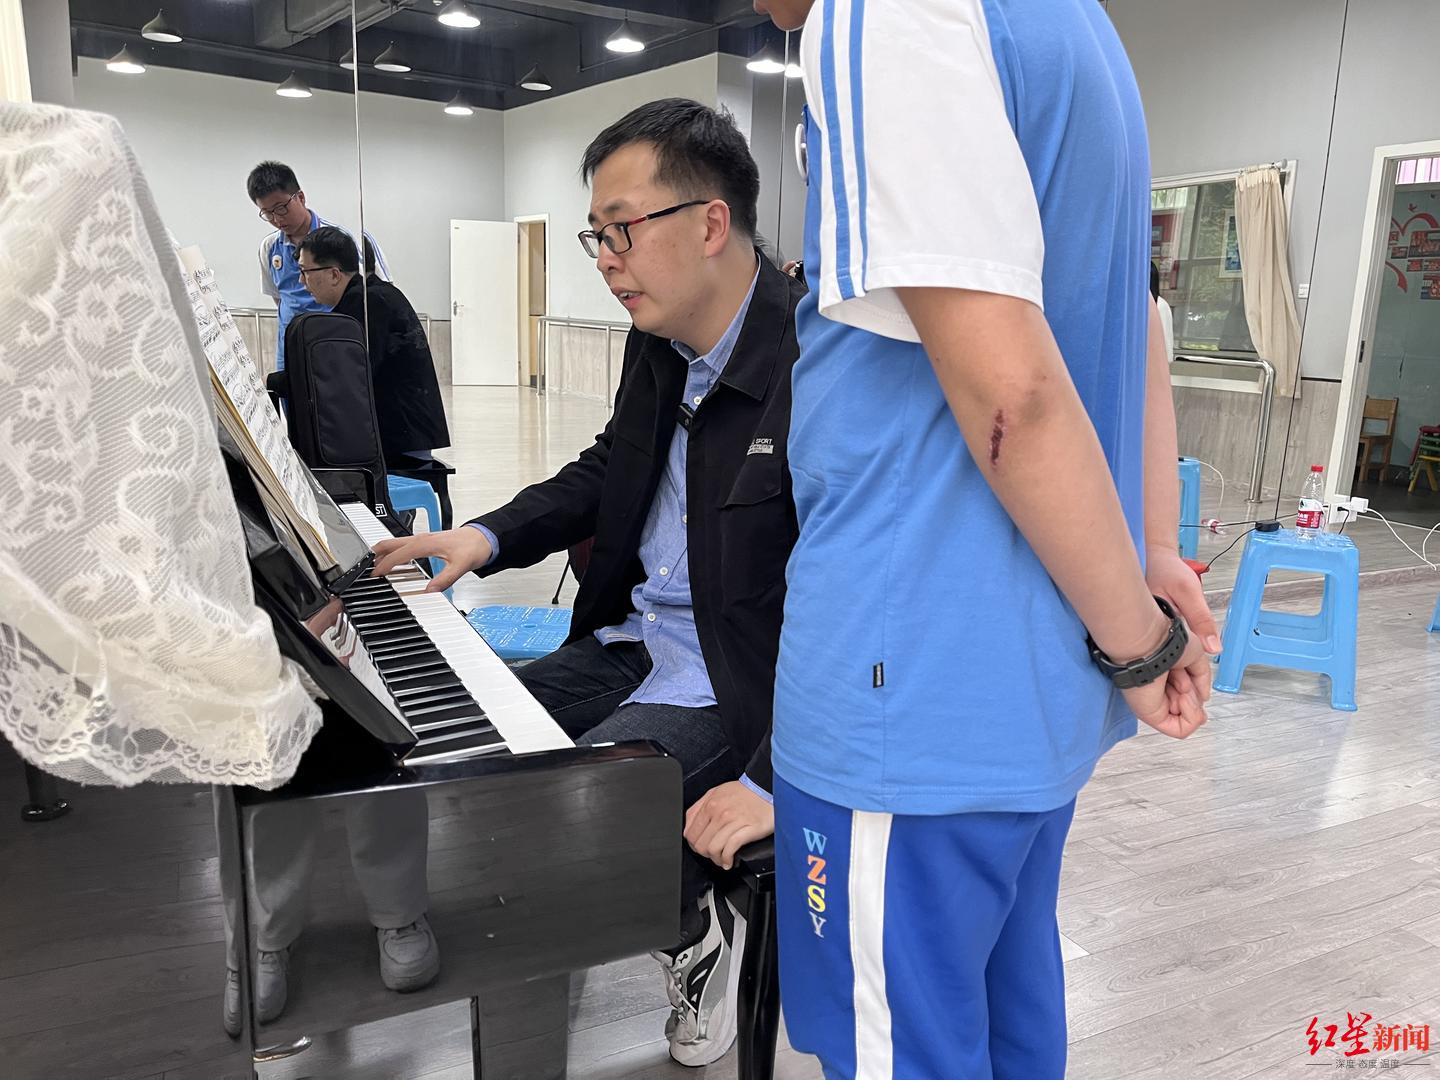 ▲白玮成正在对学生进行钢琴教学